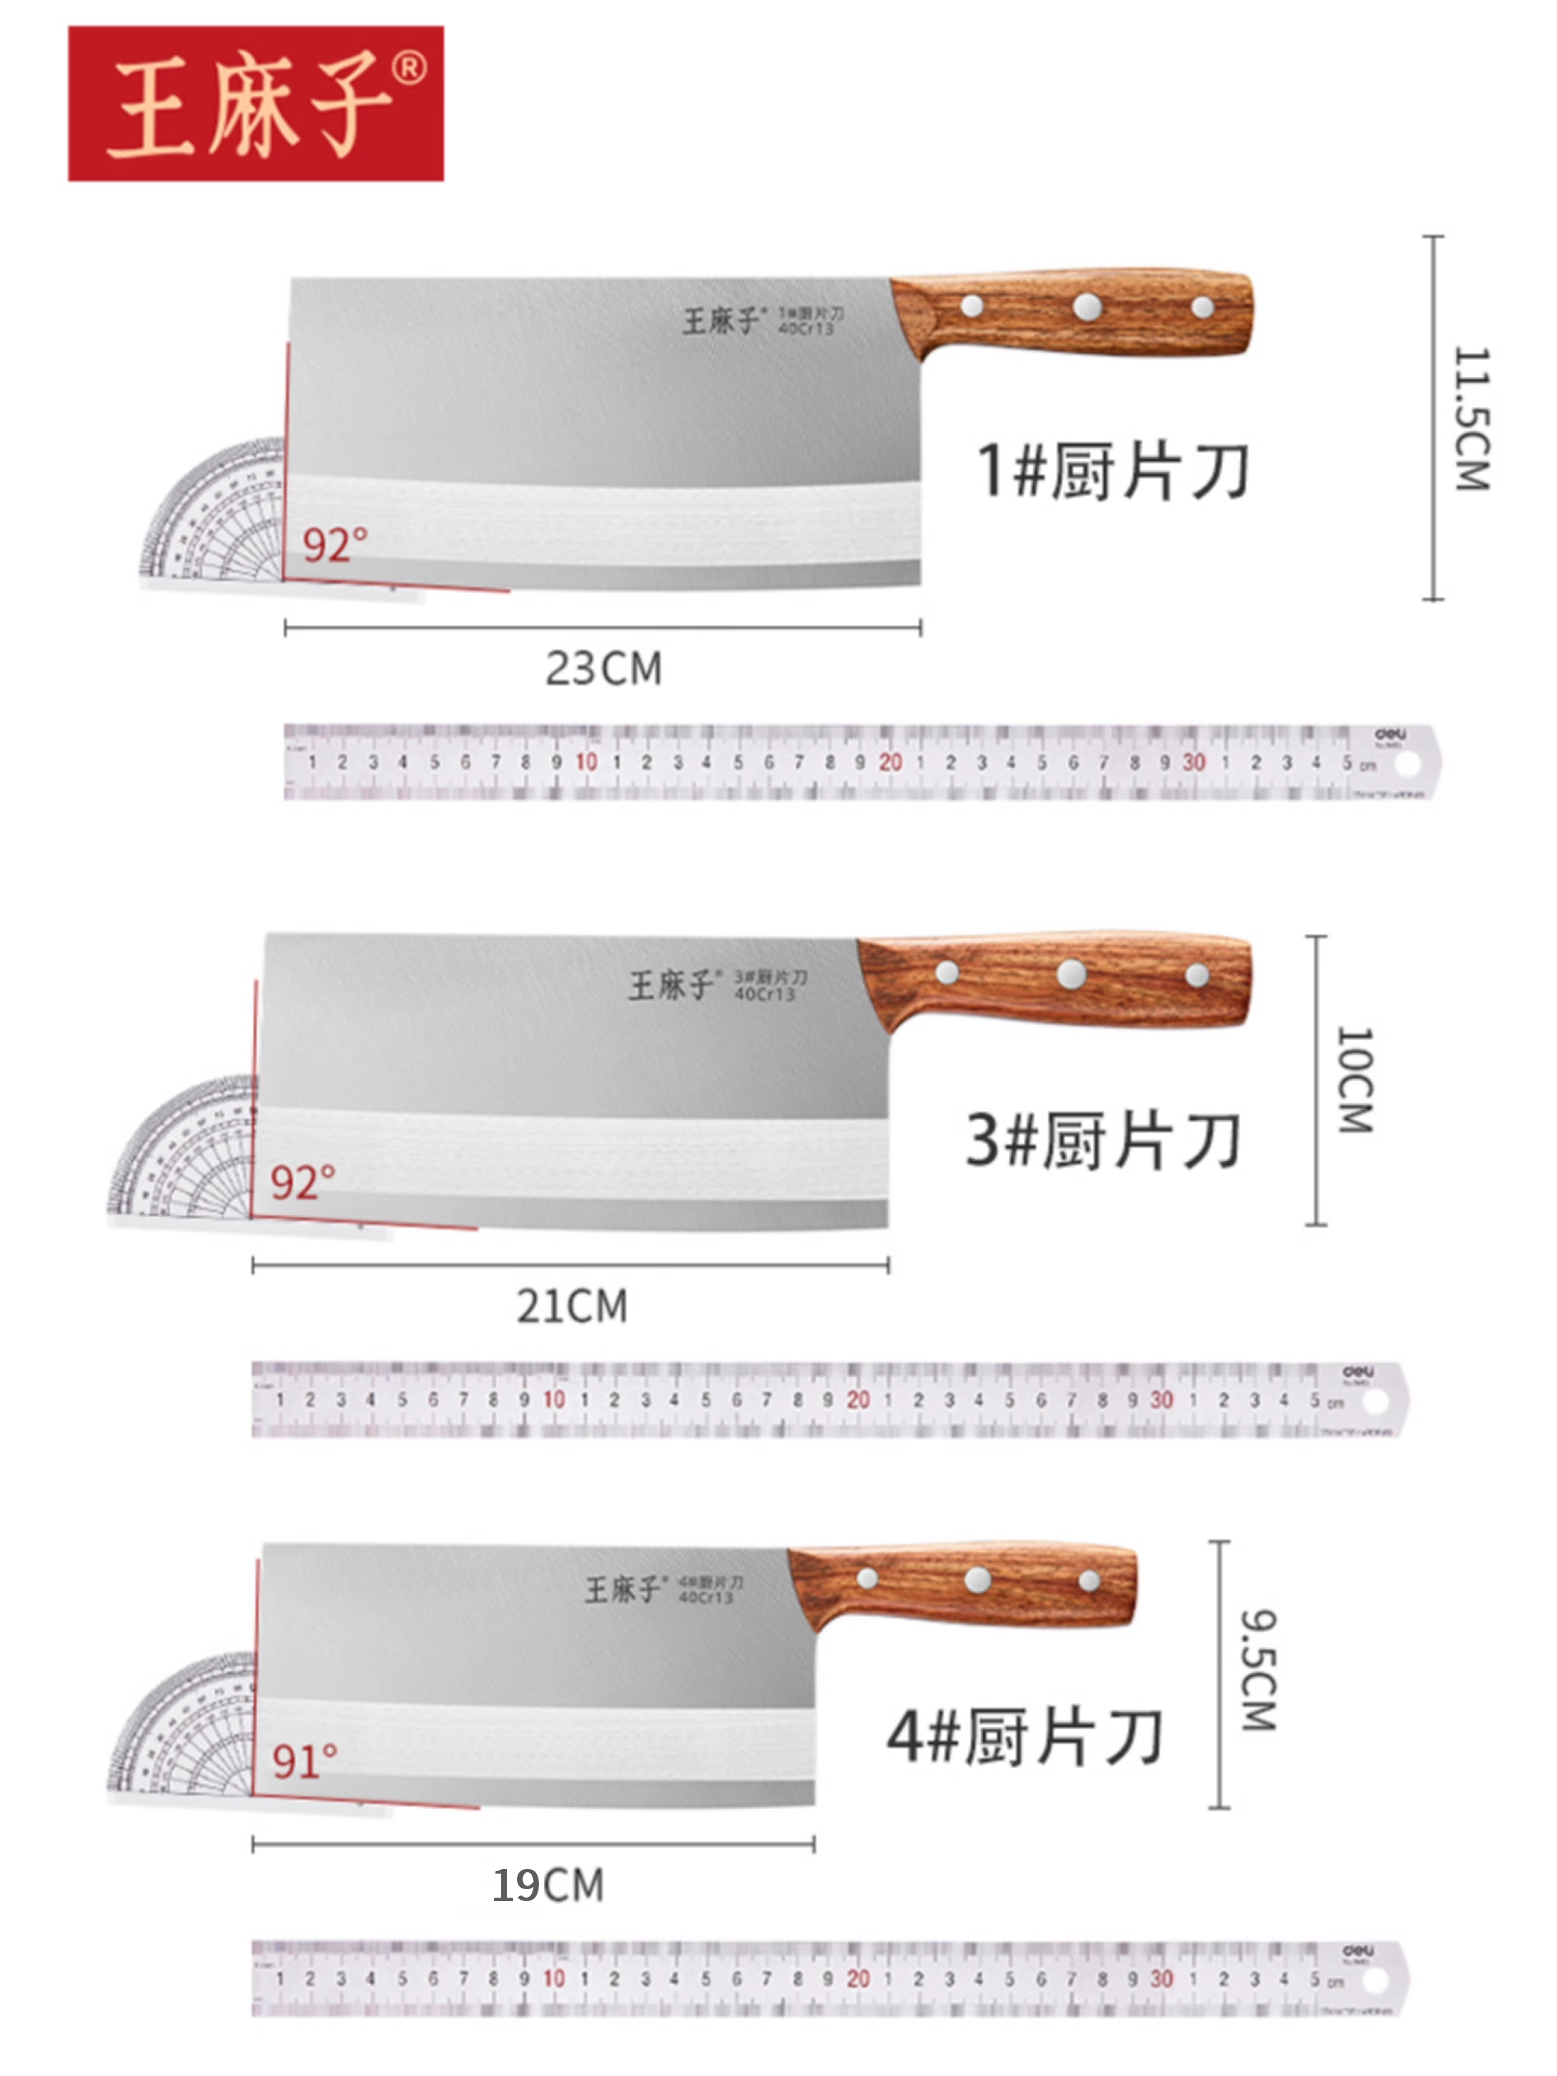 王麻子家用菜刀锻打不锈钢锋利厨刀斩切片肉厨师厨房专用菜刀刀具-图3